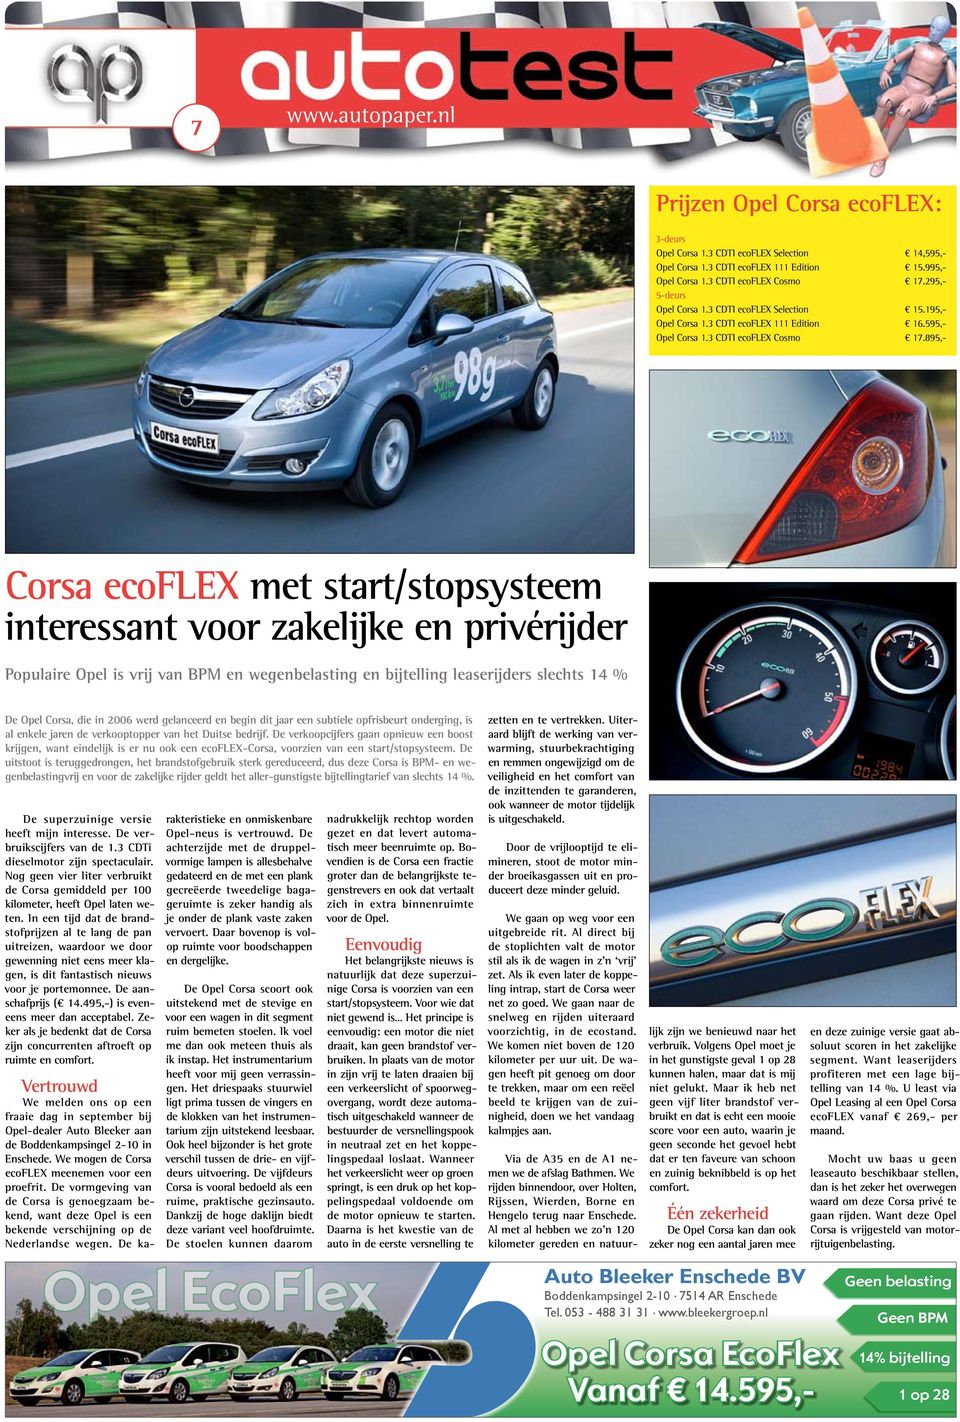 895,- Corsa ecoflex met start/stopsysteem interessant voor zakelijke en privérijder Populaire Opel is vrij van BPM en wegenbelasting en bijtelling leaserijders slechts 14 % De Opel Corsa, die in 2006